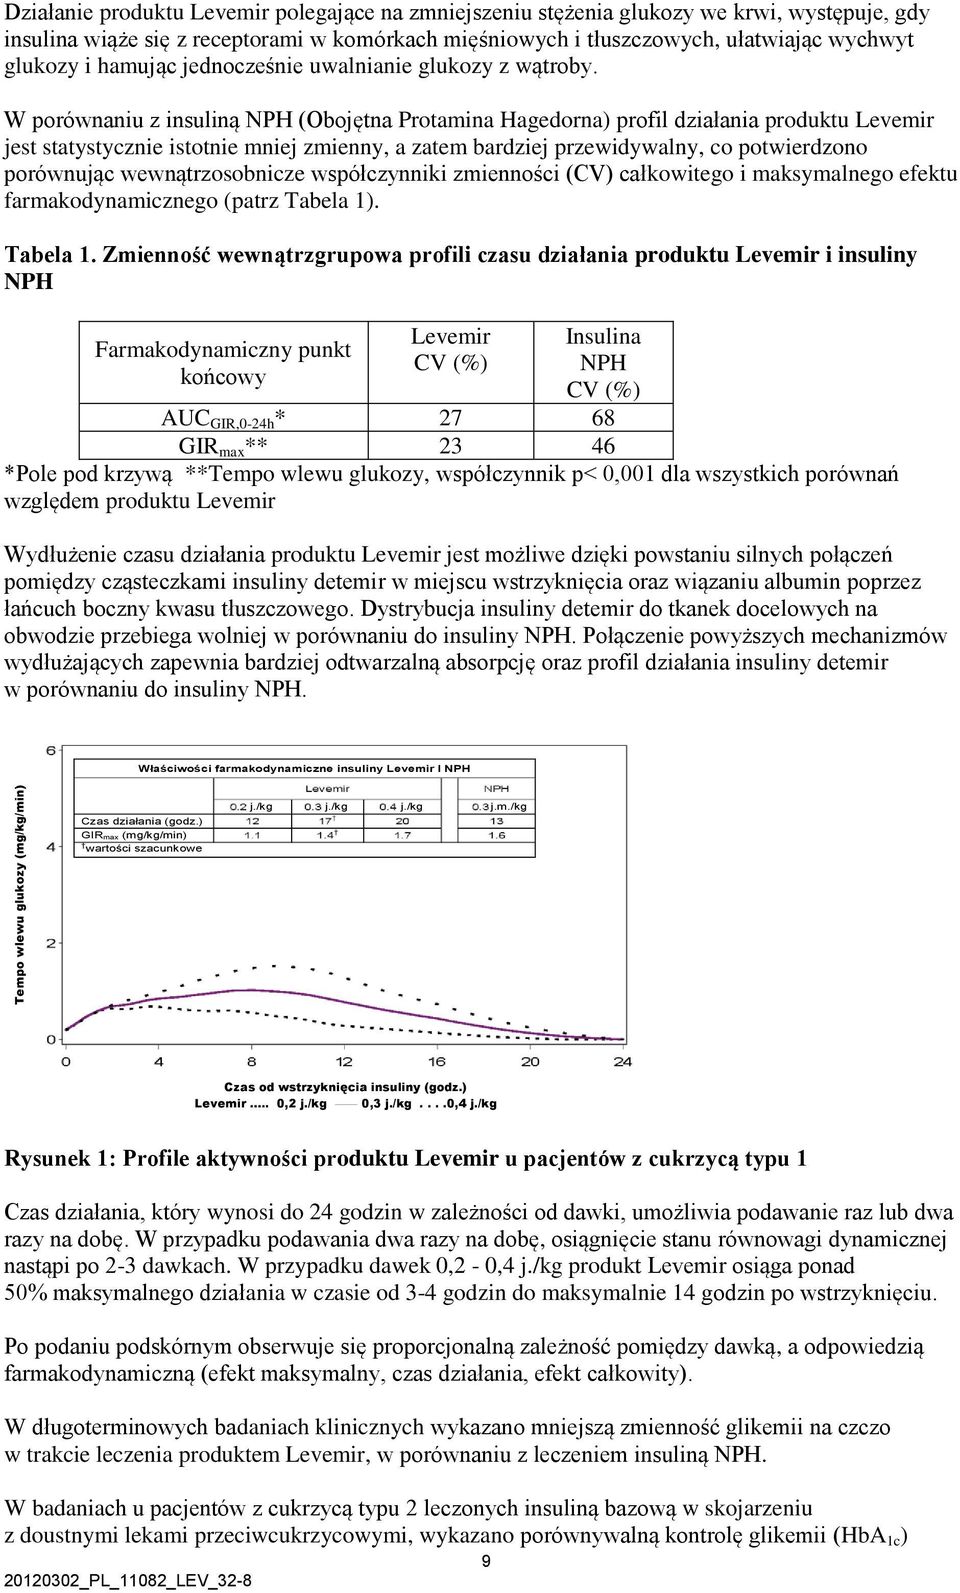 W porównaniu z insuliną NPH (Obojętna Protamina Hagedorna) profil działania produktu Levemir jest statystycznie istotnie mniej zmienny, a zatem bardziej przewidywalny, co potwierdzono porównując